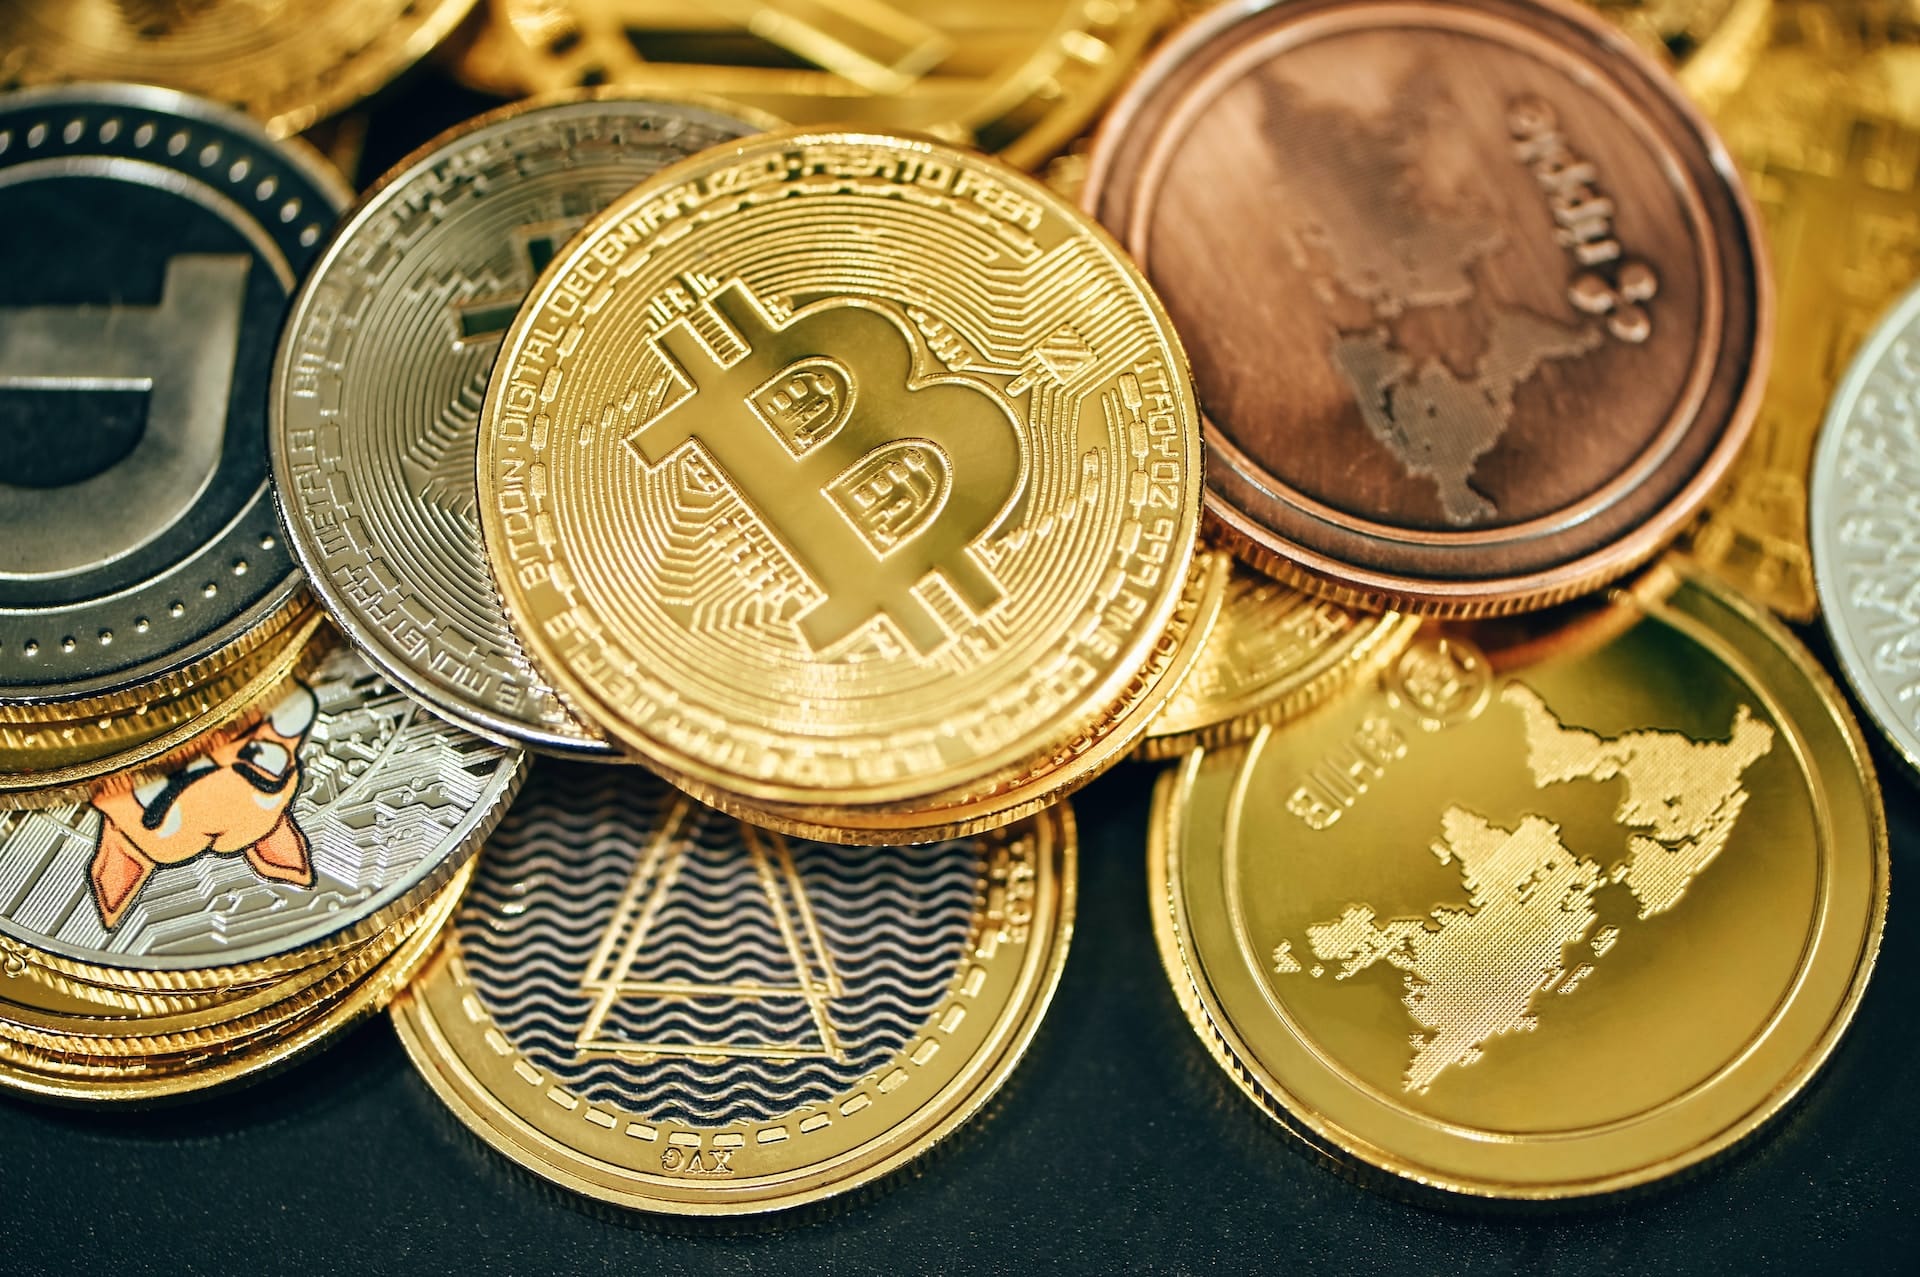 Krypto-News-Welche-Kryptow-hrung-unter-1-Euro-heute-kaufen-Die-f-nf-besten-Coins